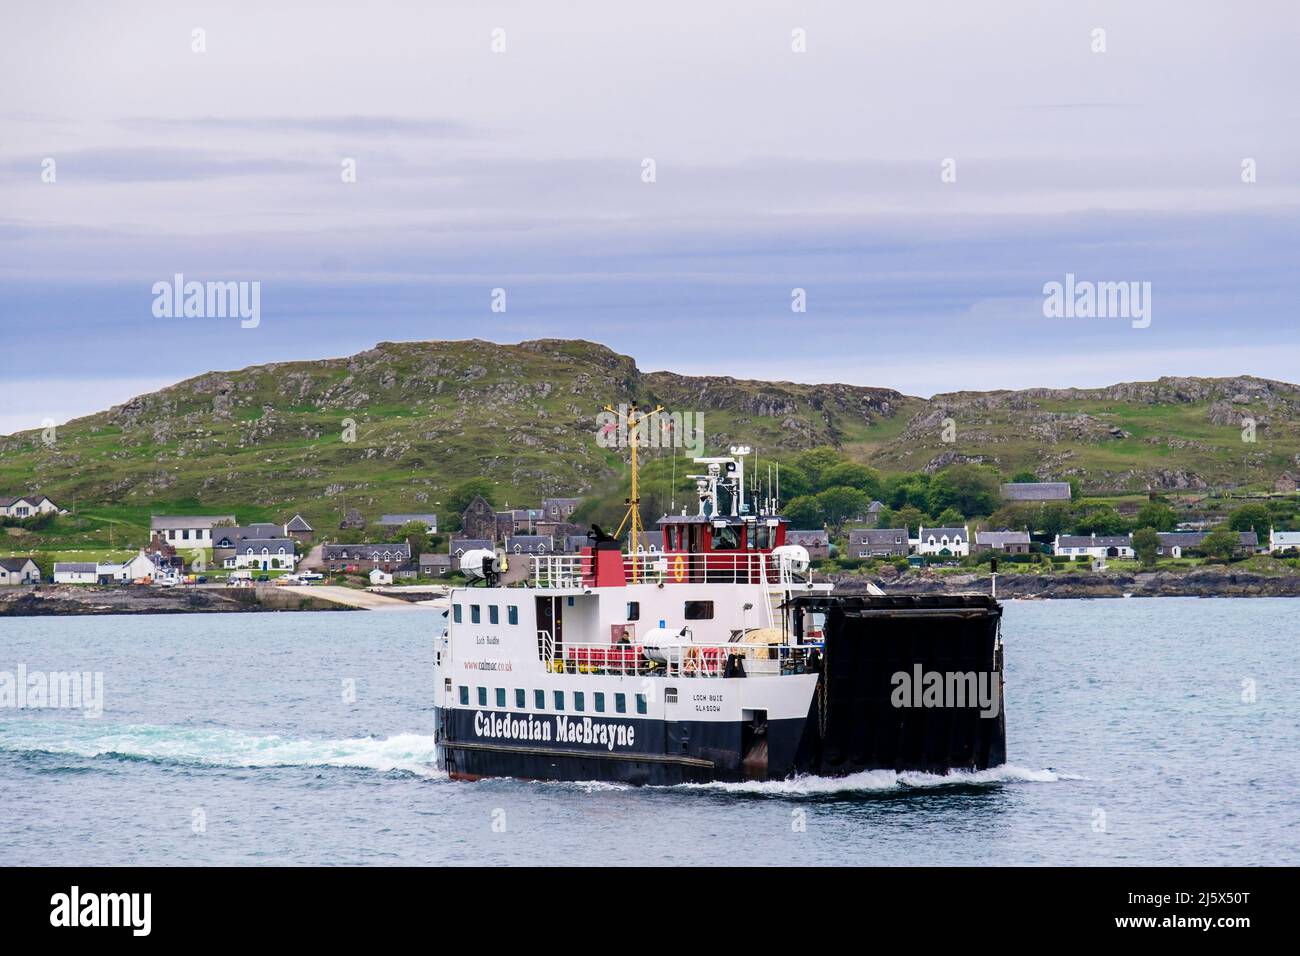 Caledonian MacBrayne Fähre segelt von der Insel Iona nach Fionnphort, Isle of Mull, Argyll und Bute, Inner Hebriden, Western Isles, Schottland, Vereinigtes Königreich, Großbritannien Stockfoto